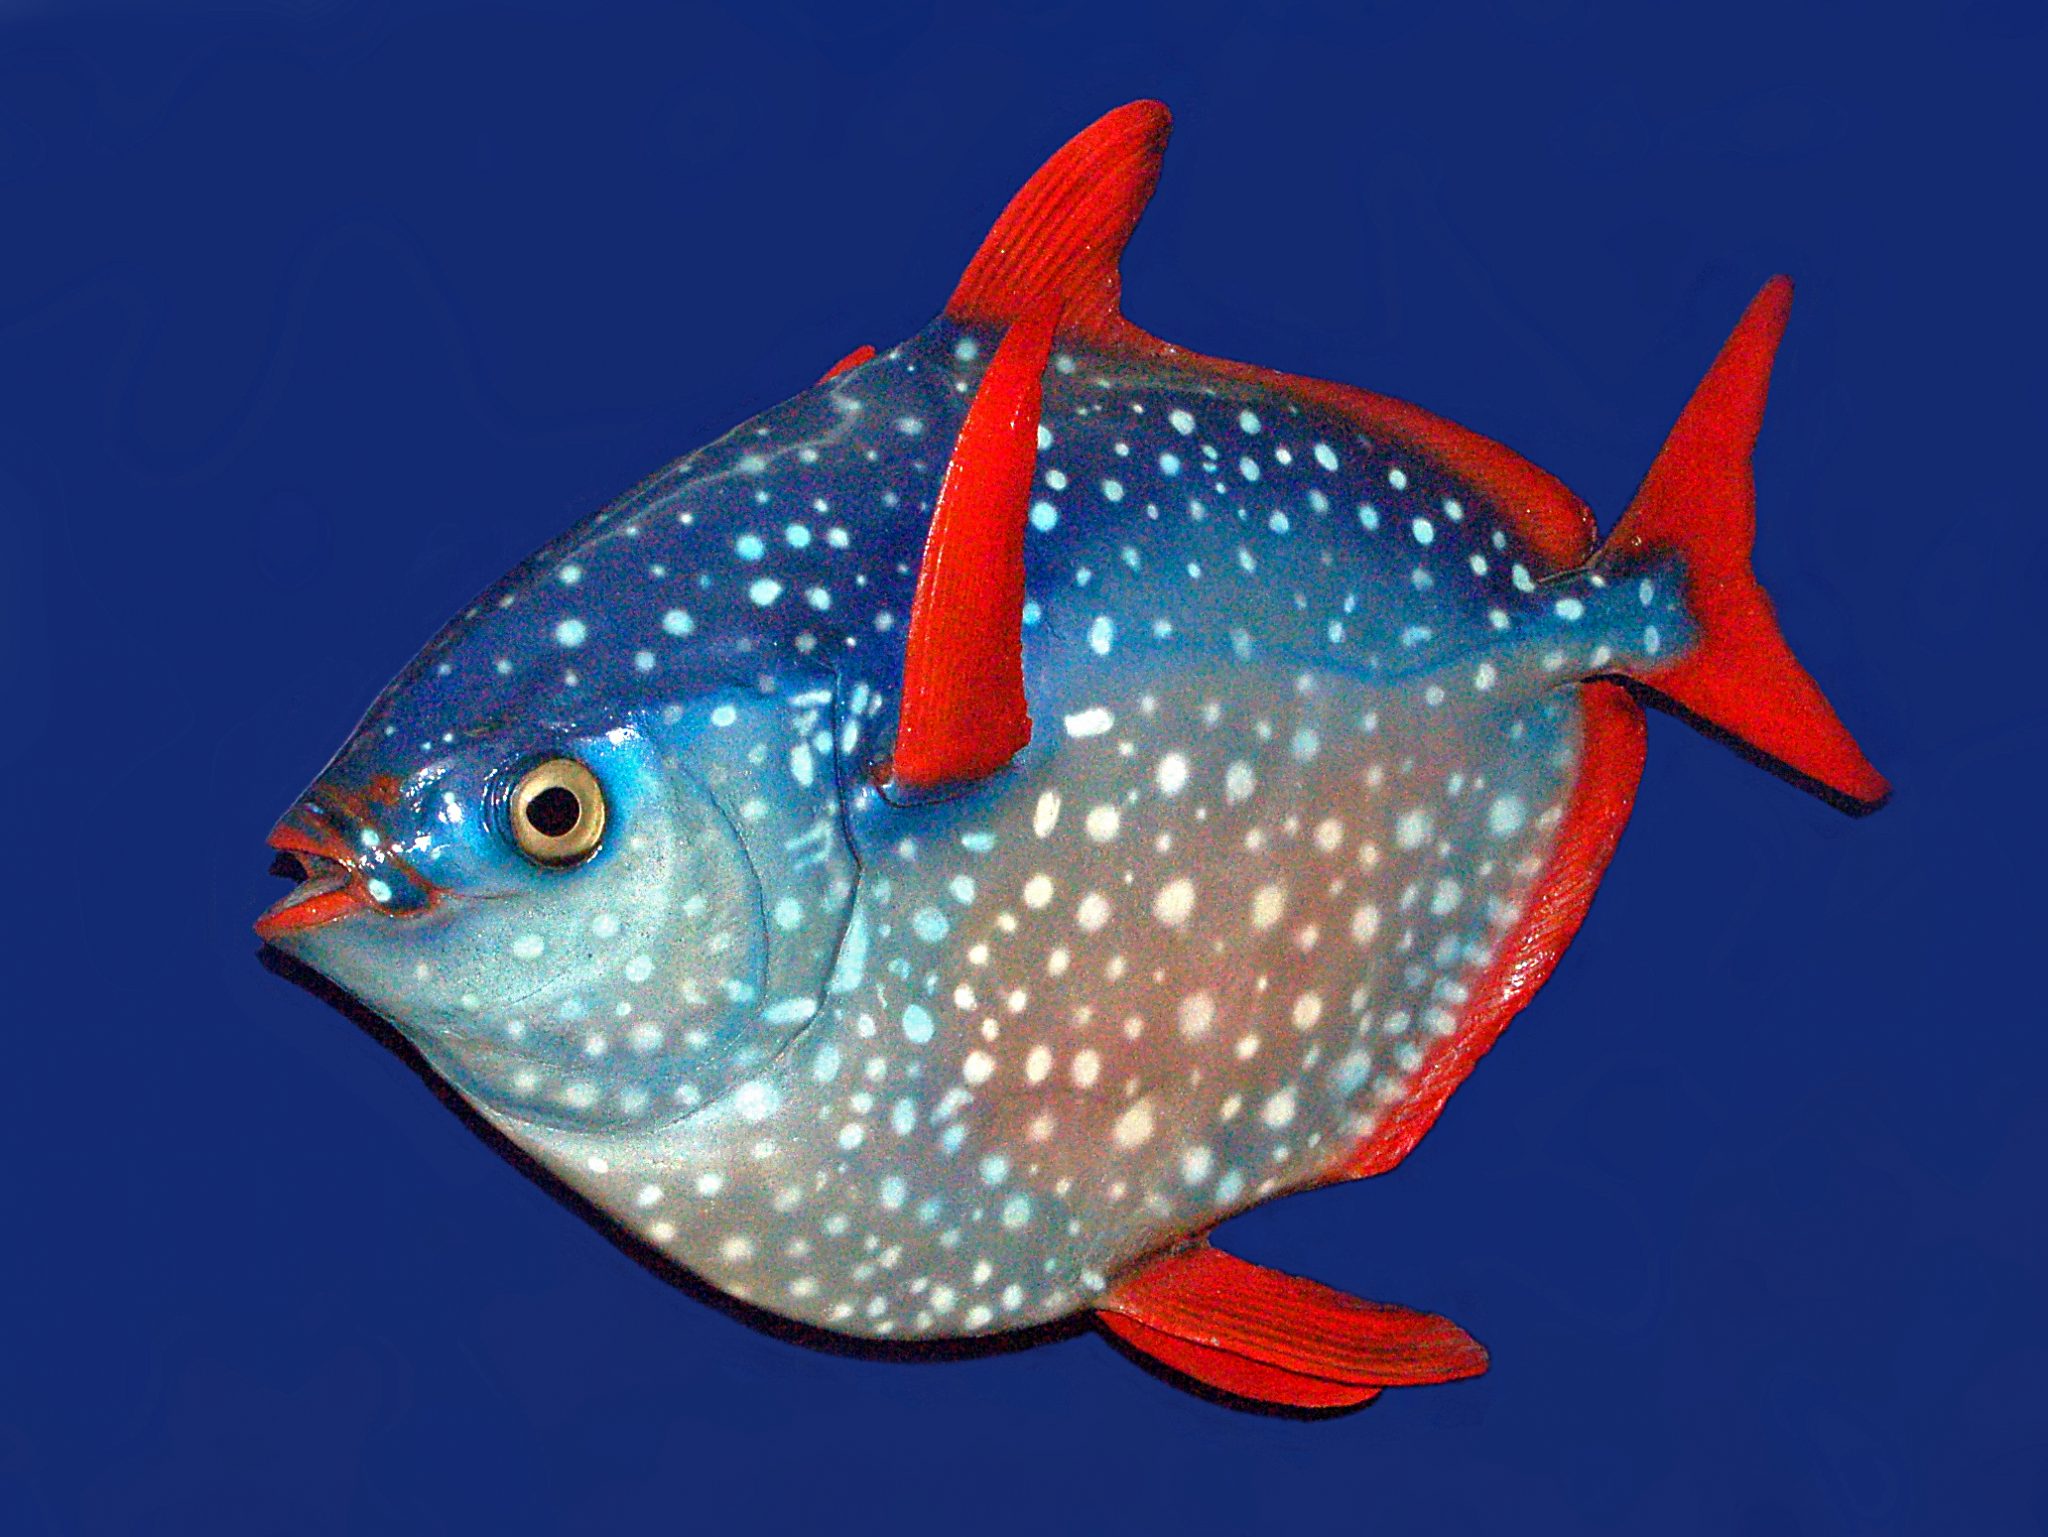 рыбы фото википедия